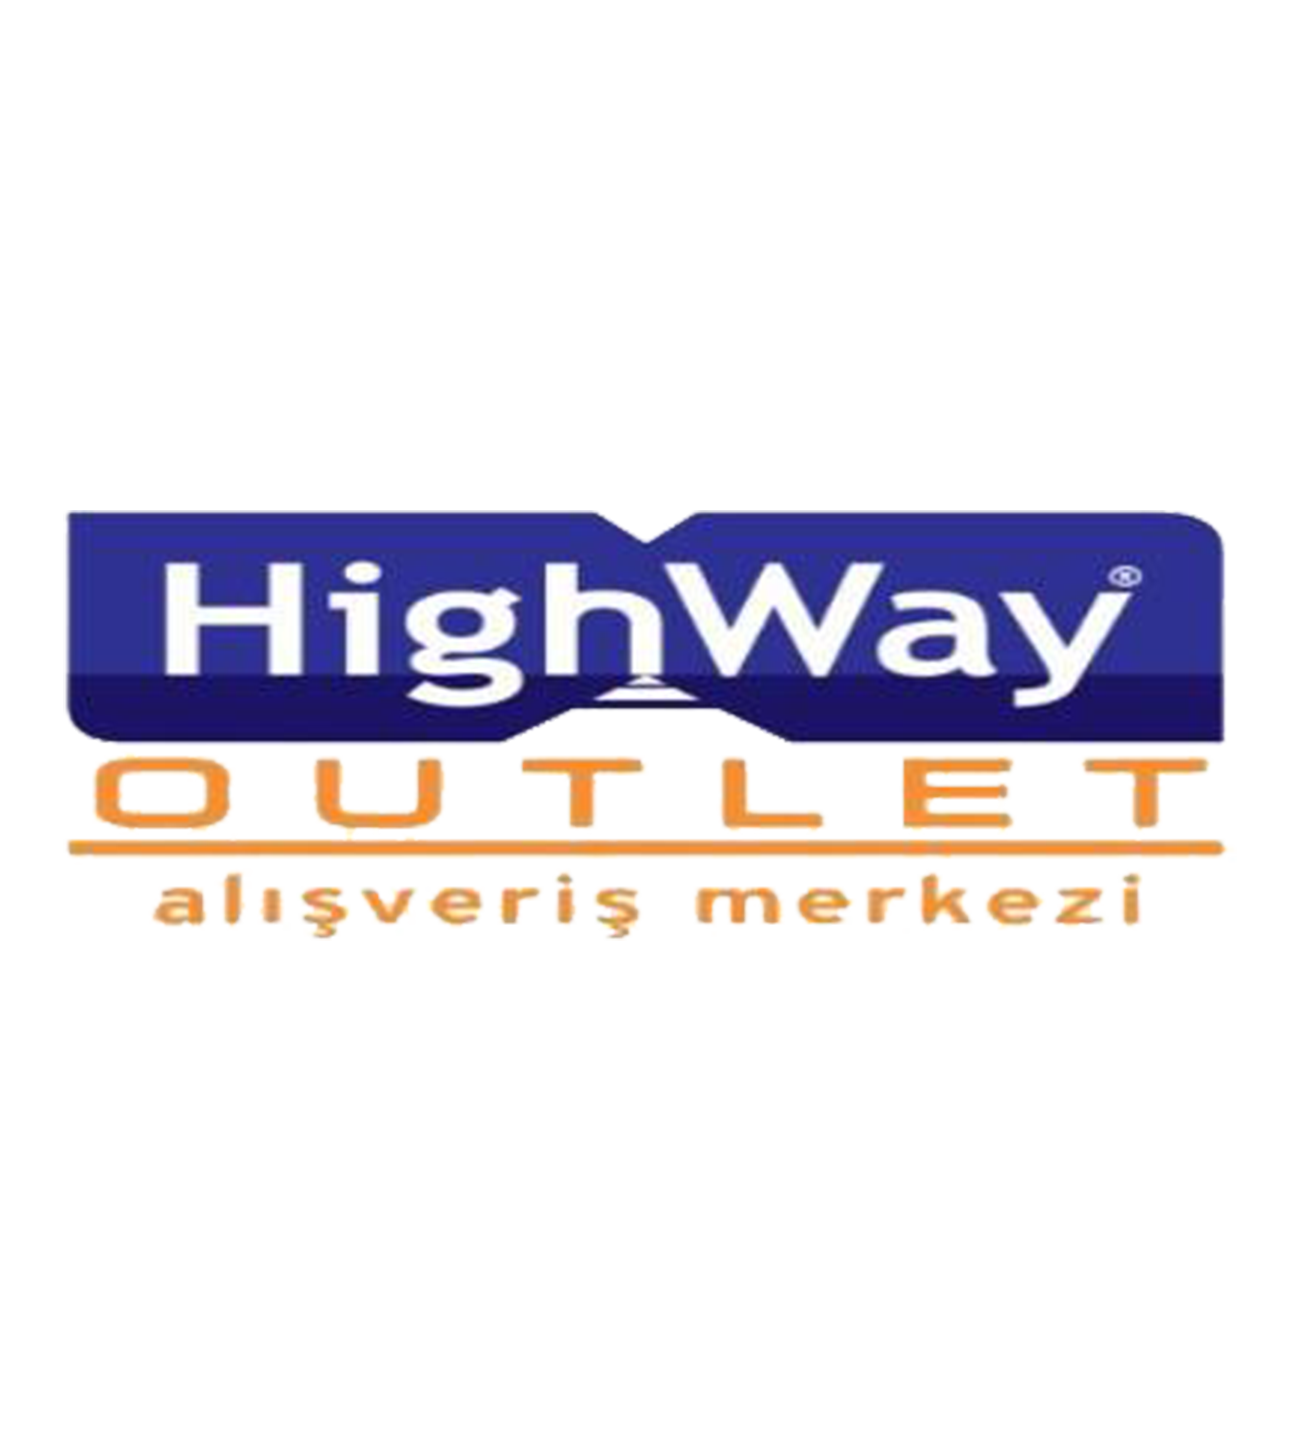 Highway Outlet AVM